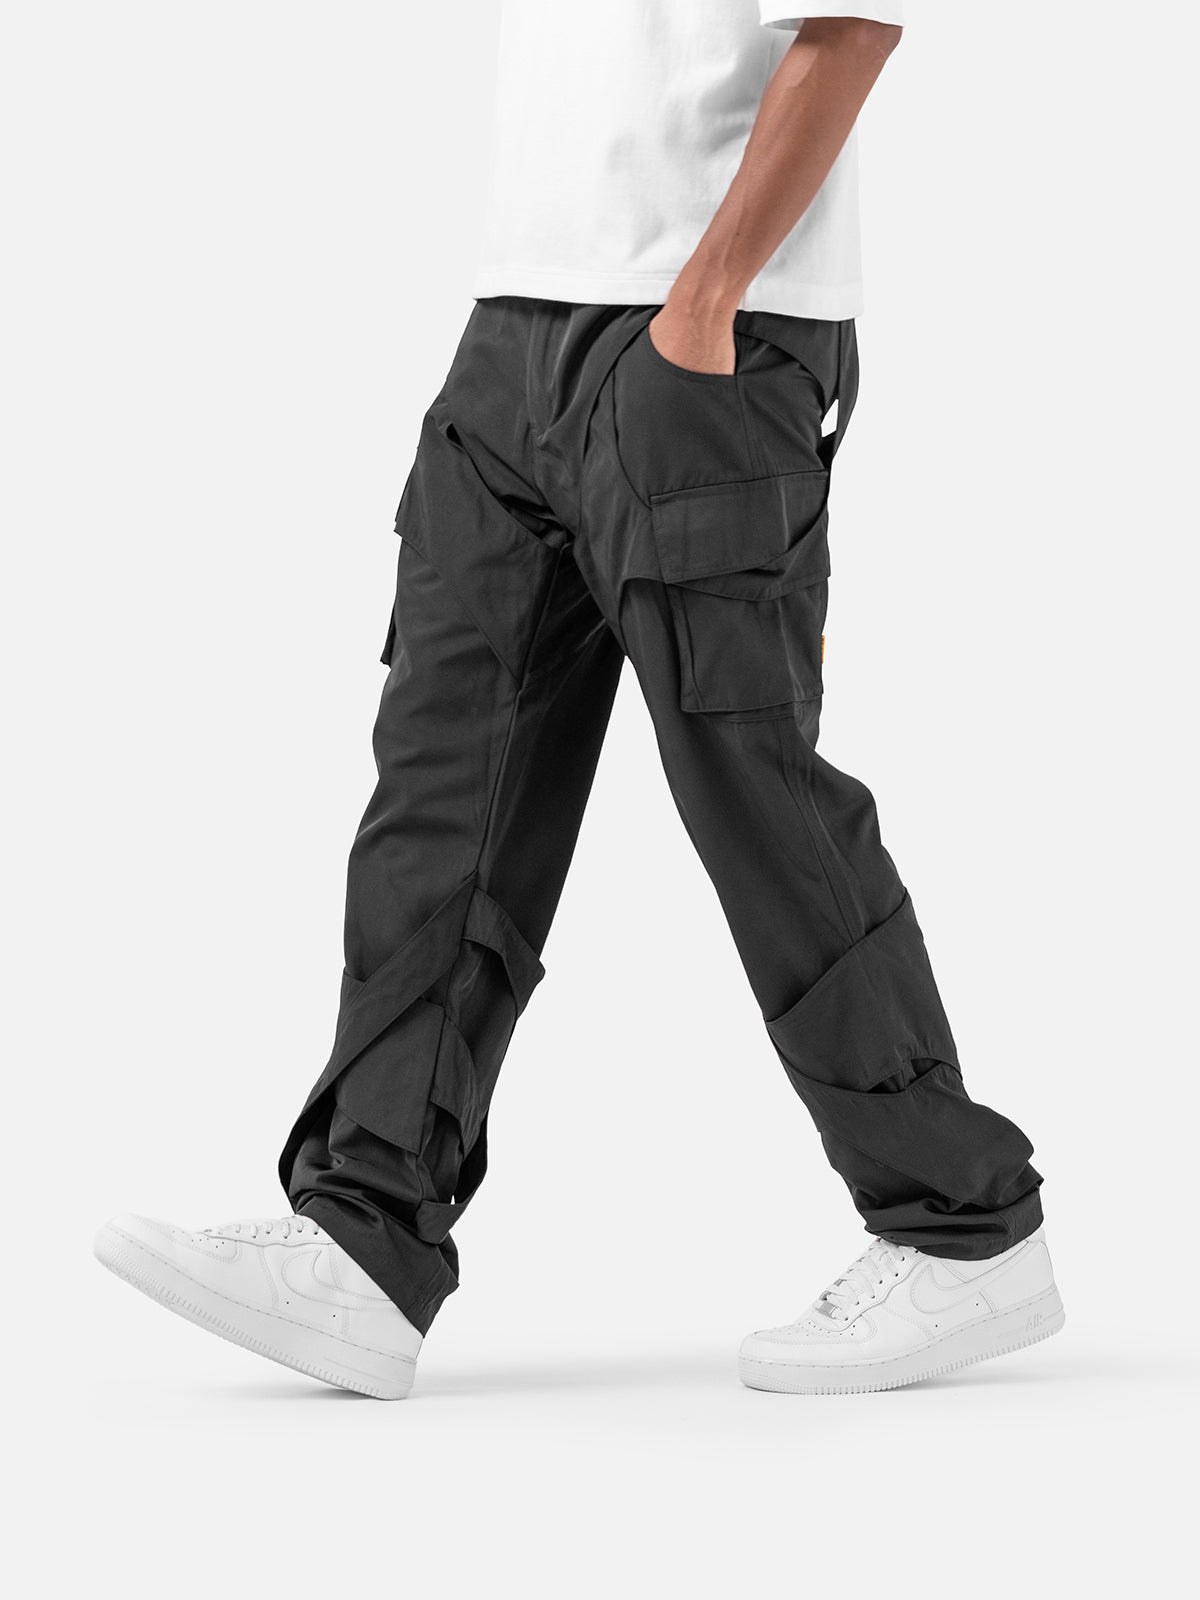 N100 Cargo Pants - Black | Blacktailor – BLACKTAILOR